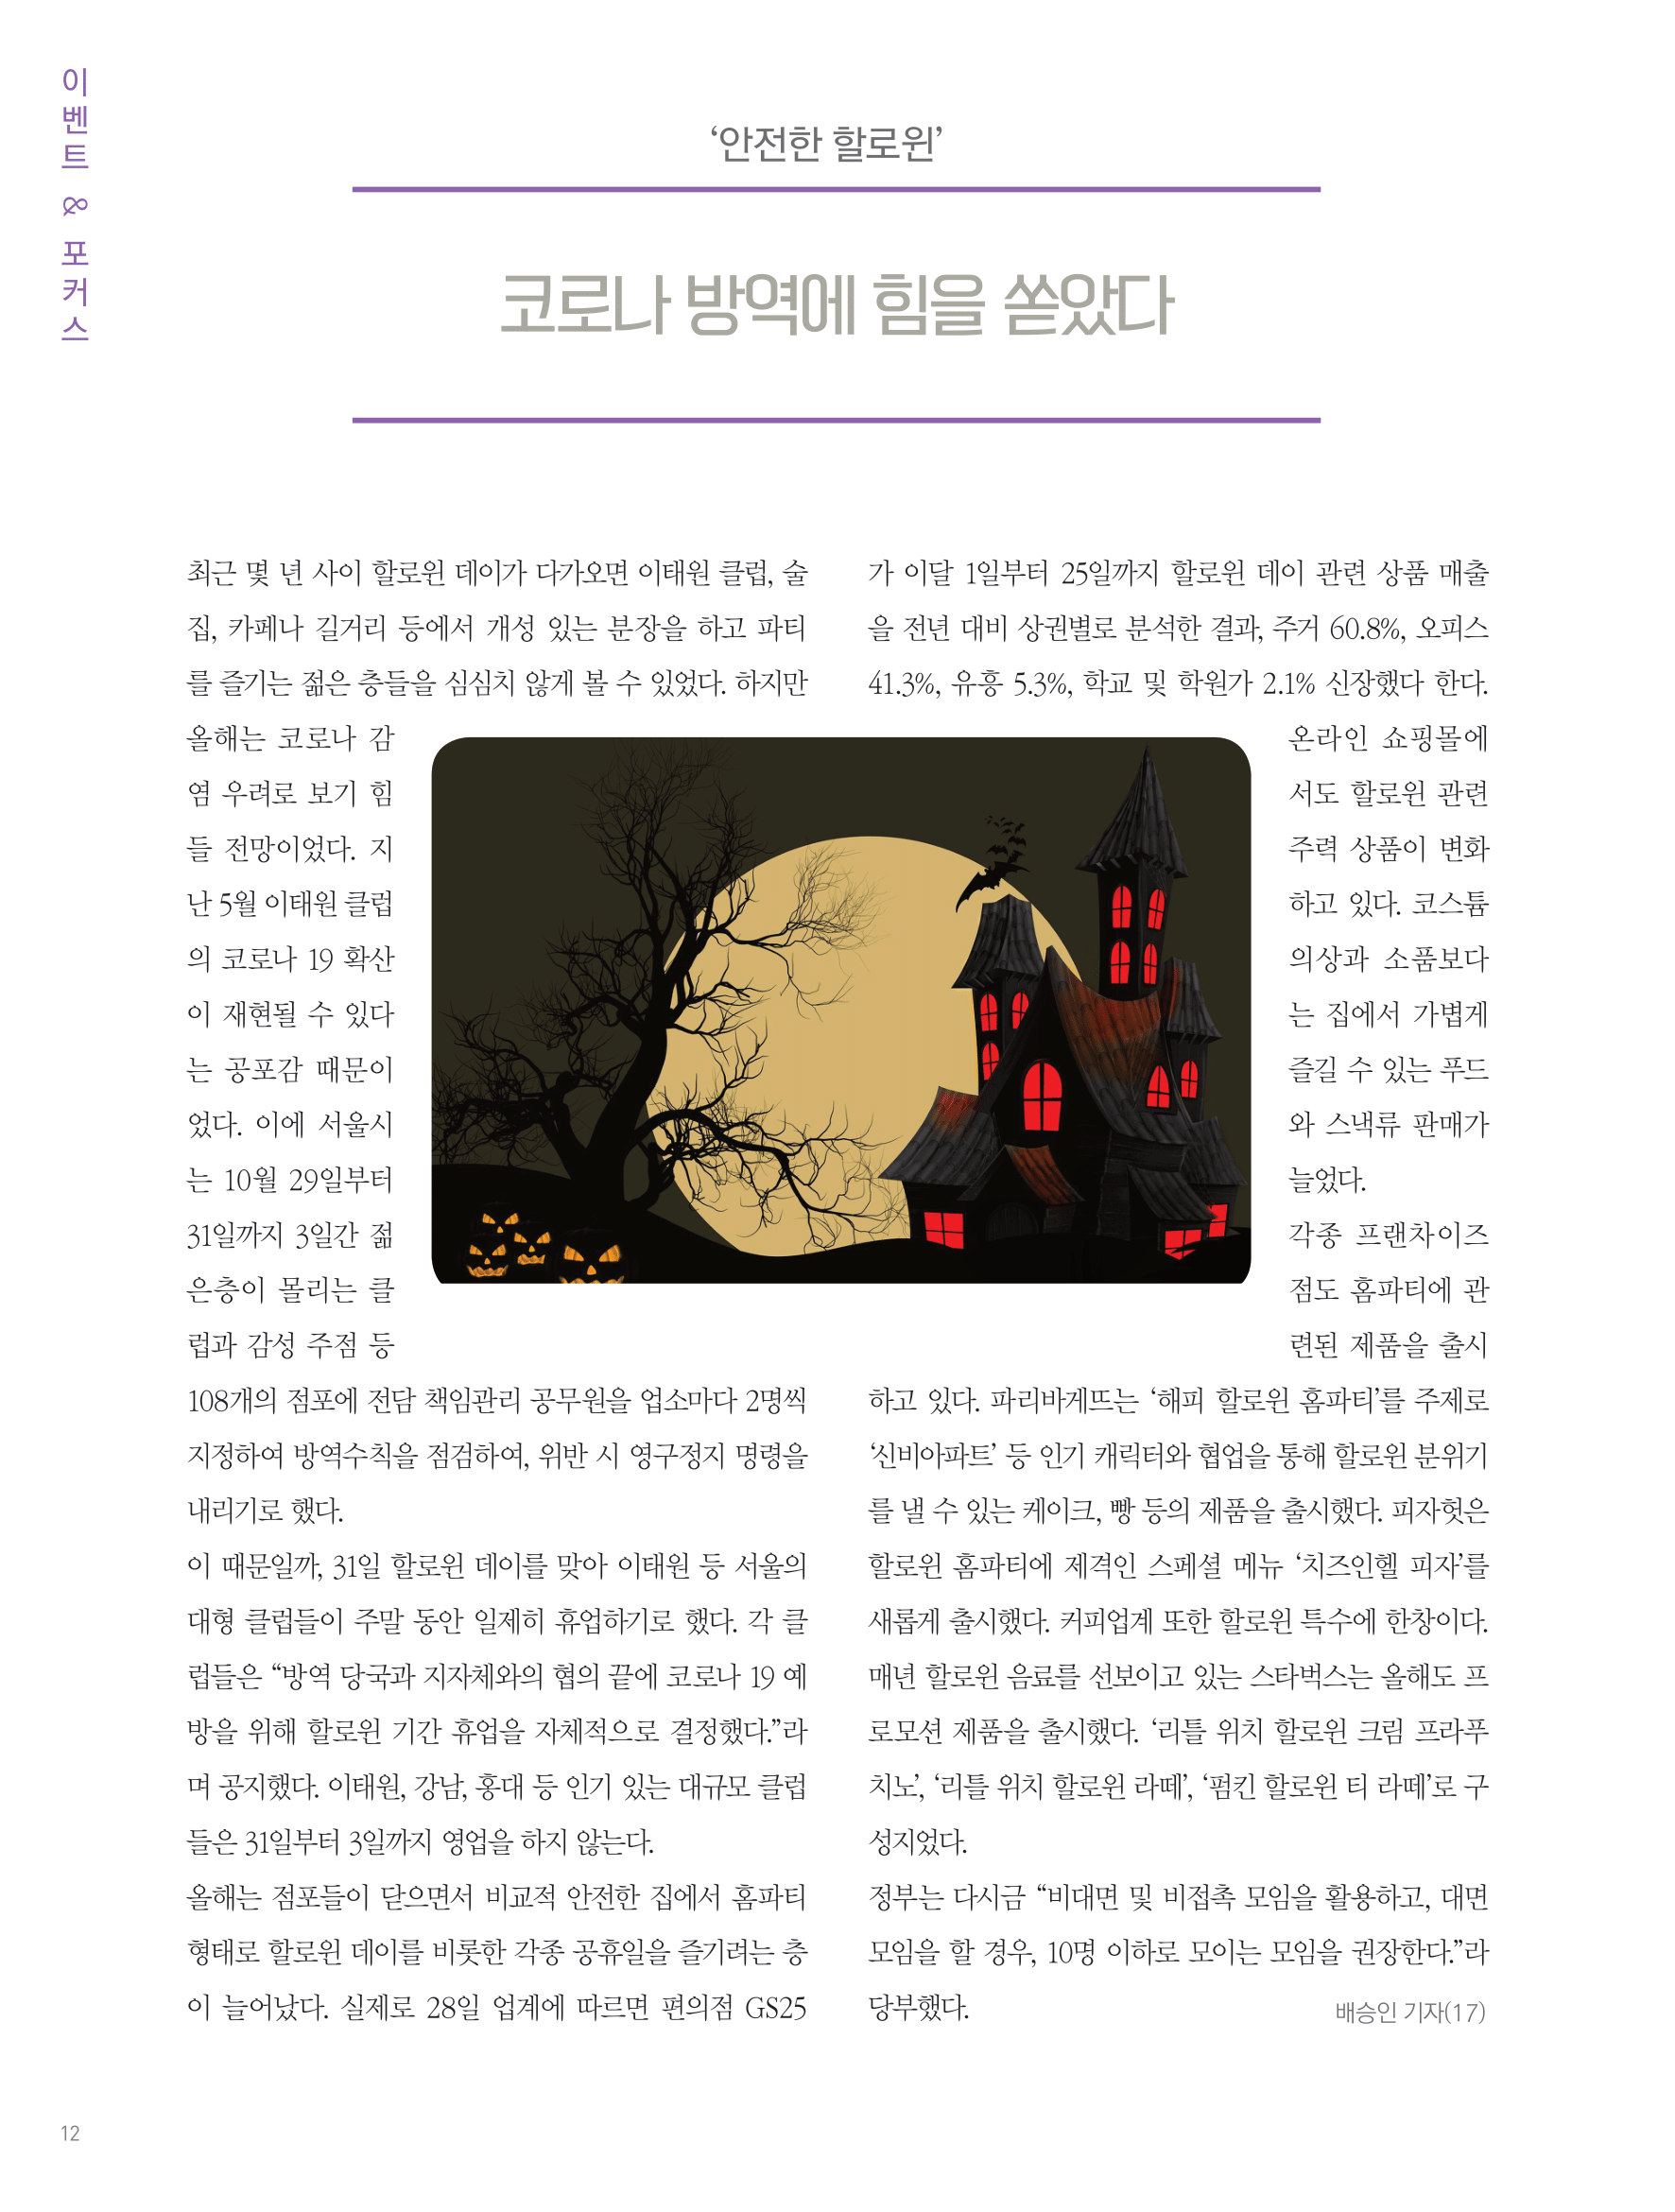 뜻새김 신문 76호 11